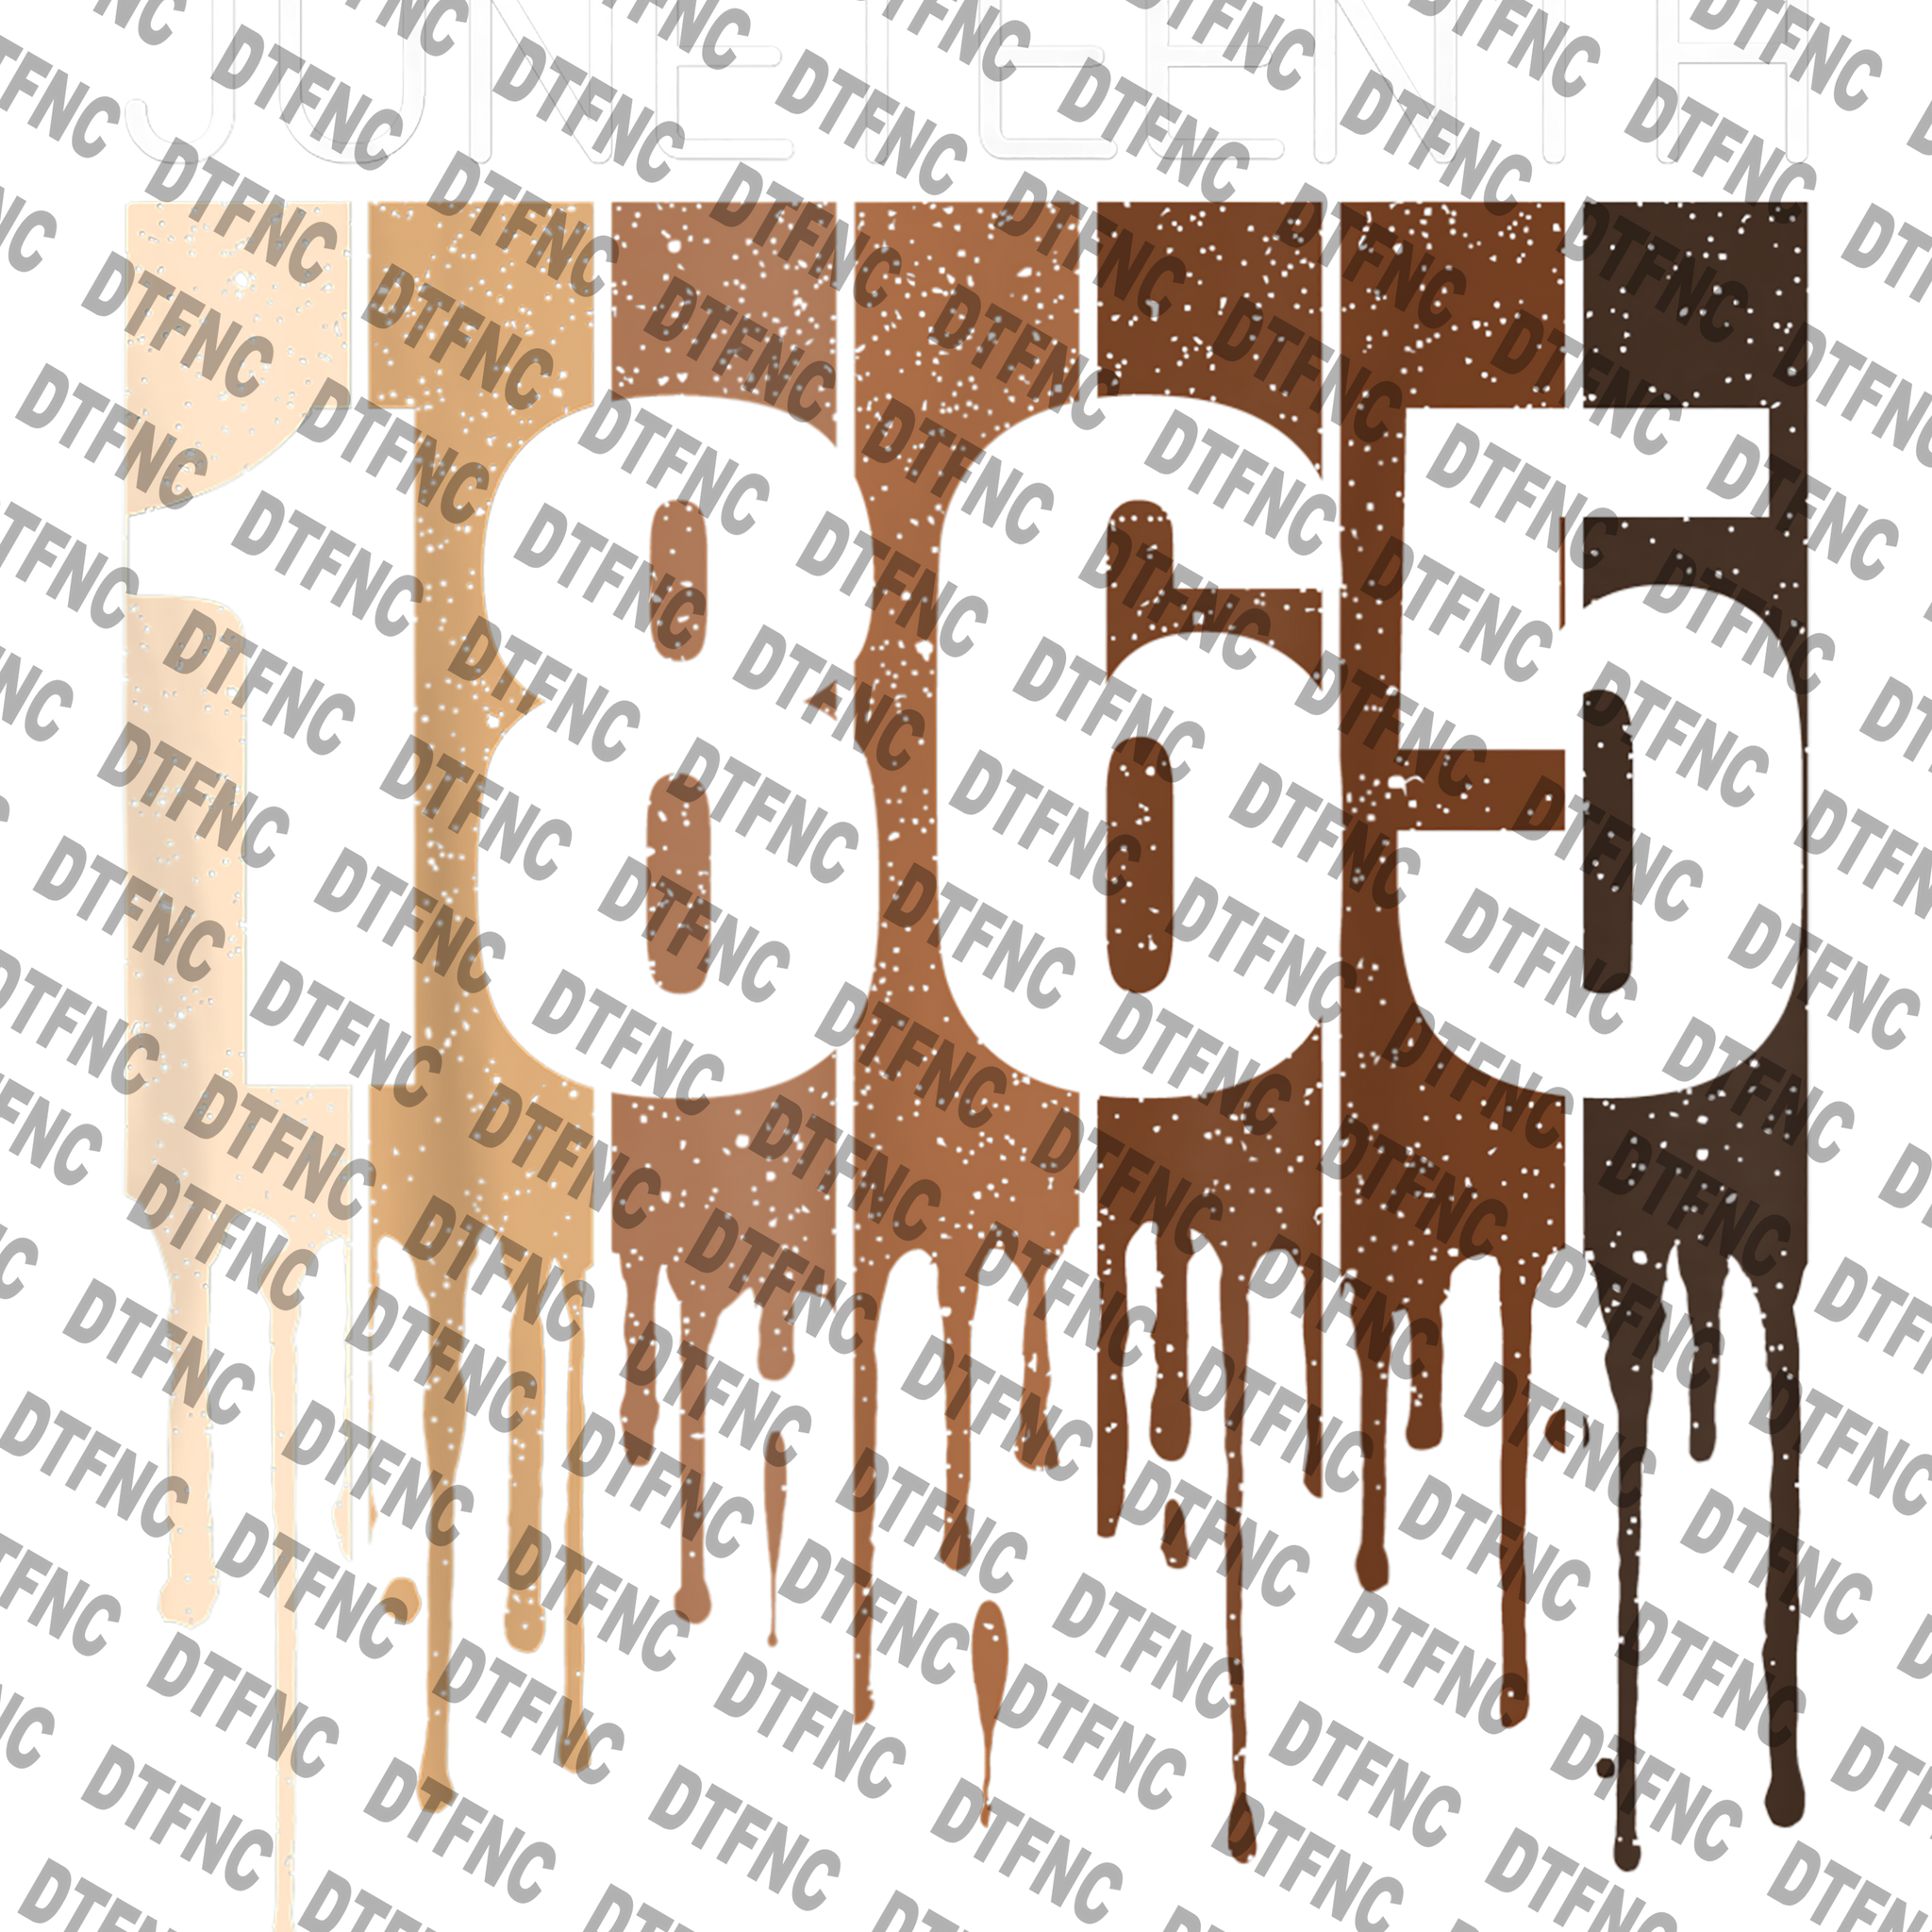 Juneteenth - 1865